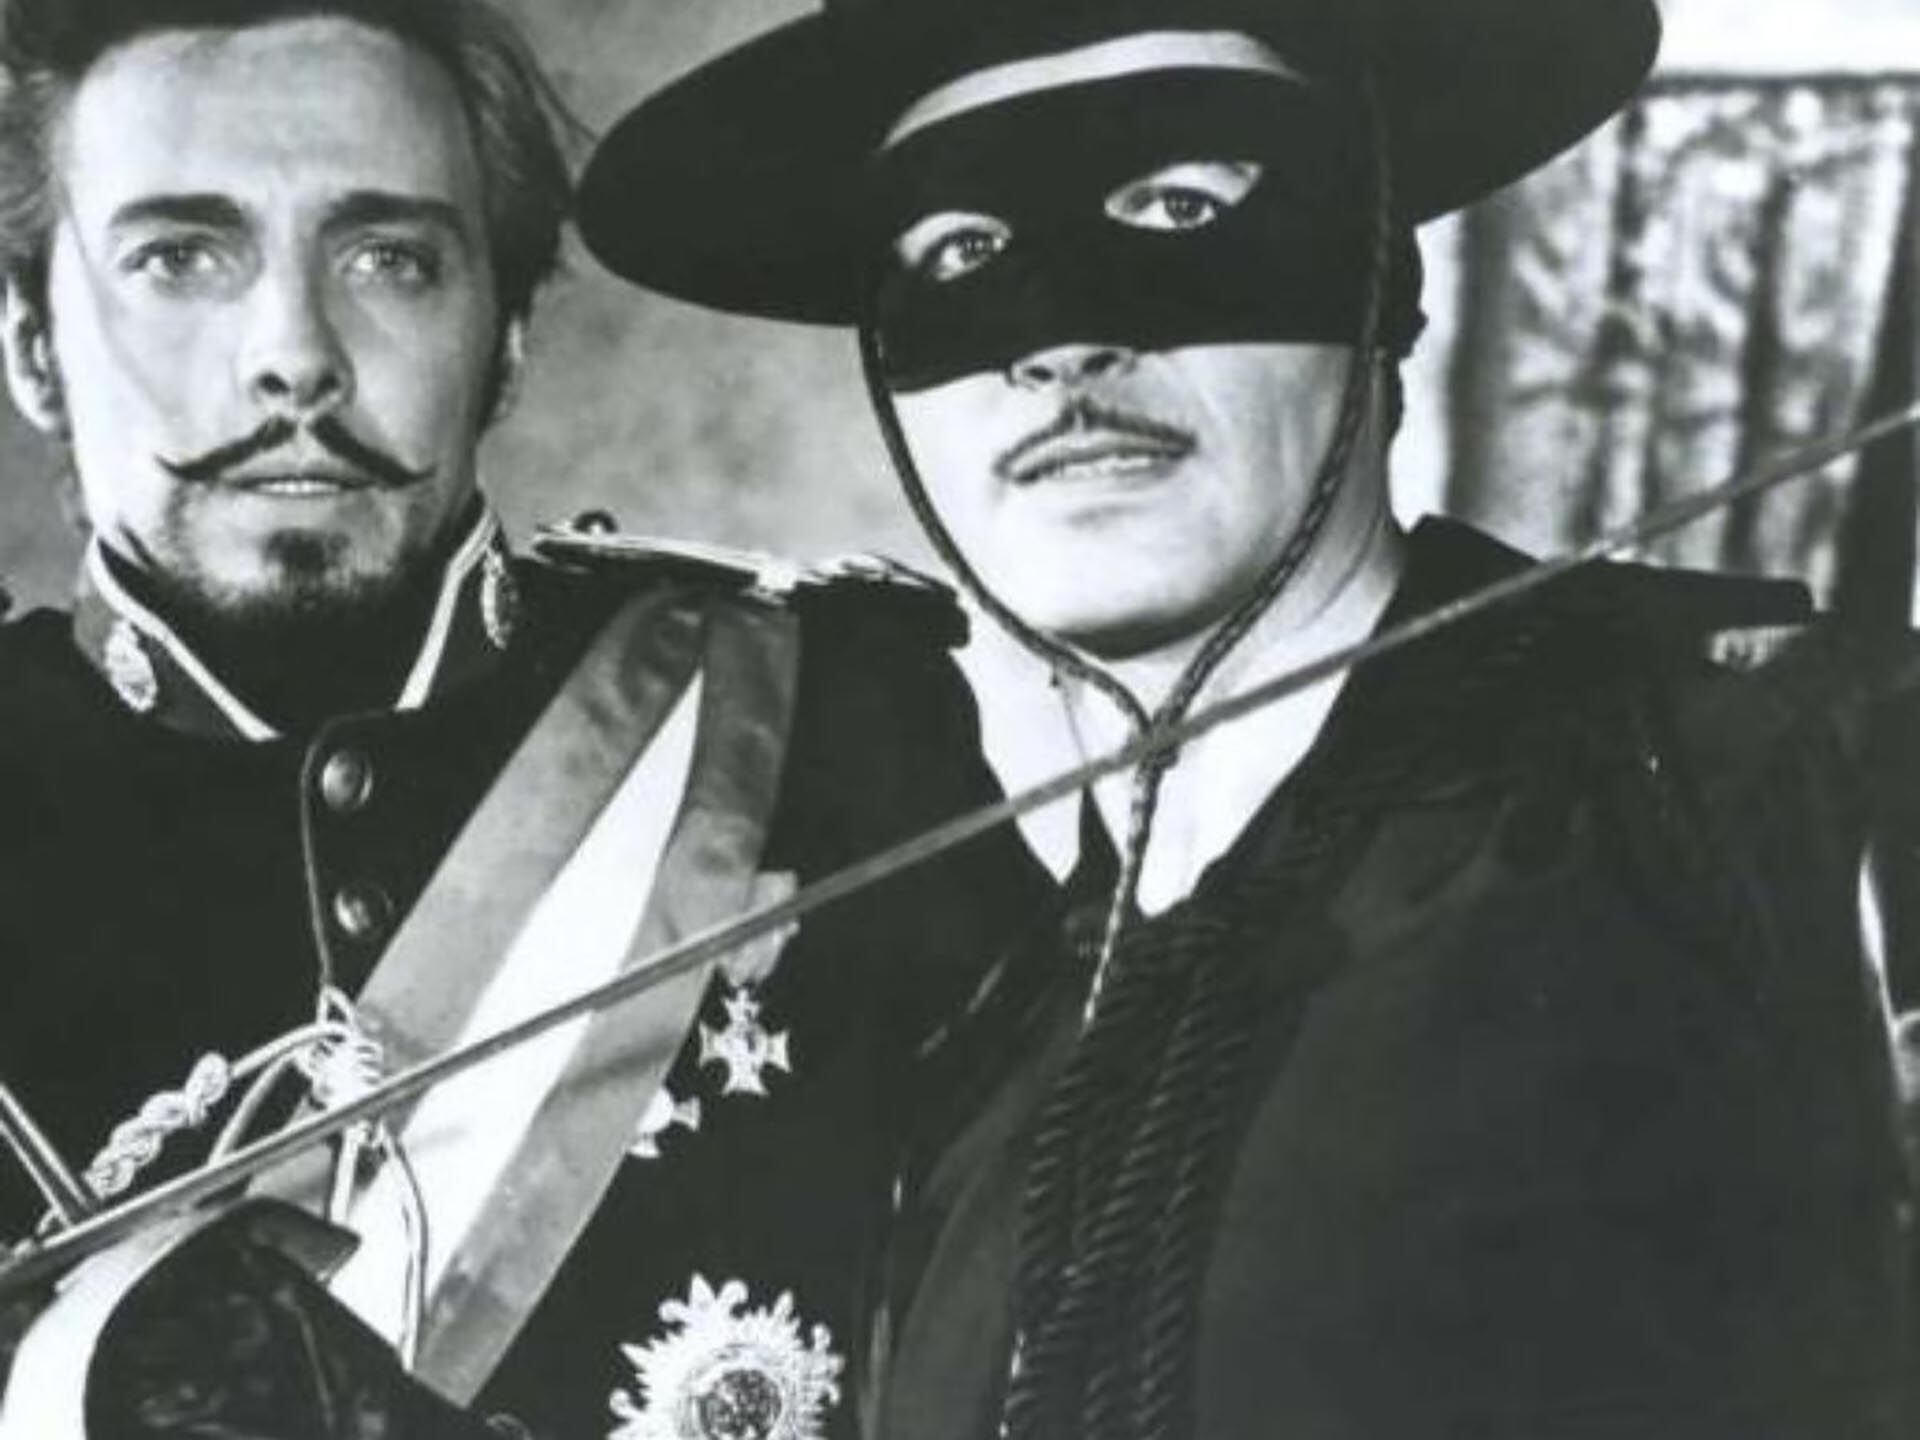 Guy Williams fue elegido como protagonista de El Zorro gracias al director Norman Foster, aunque Walt Disney quería que Britt Lomond lo interpretara